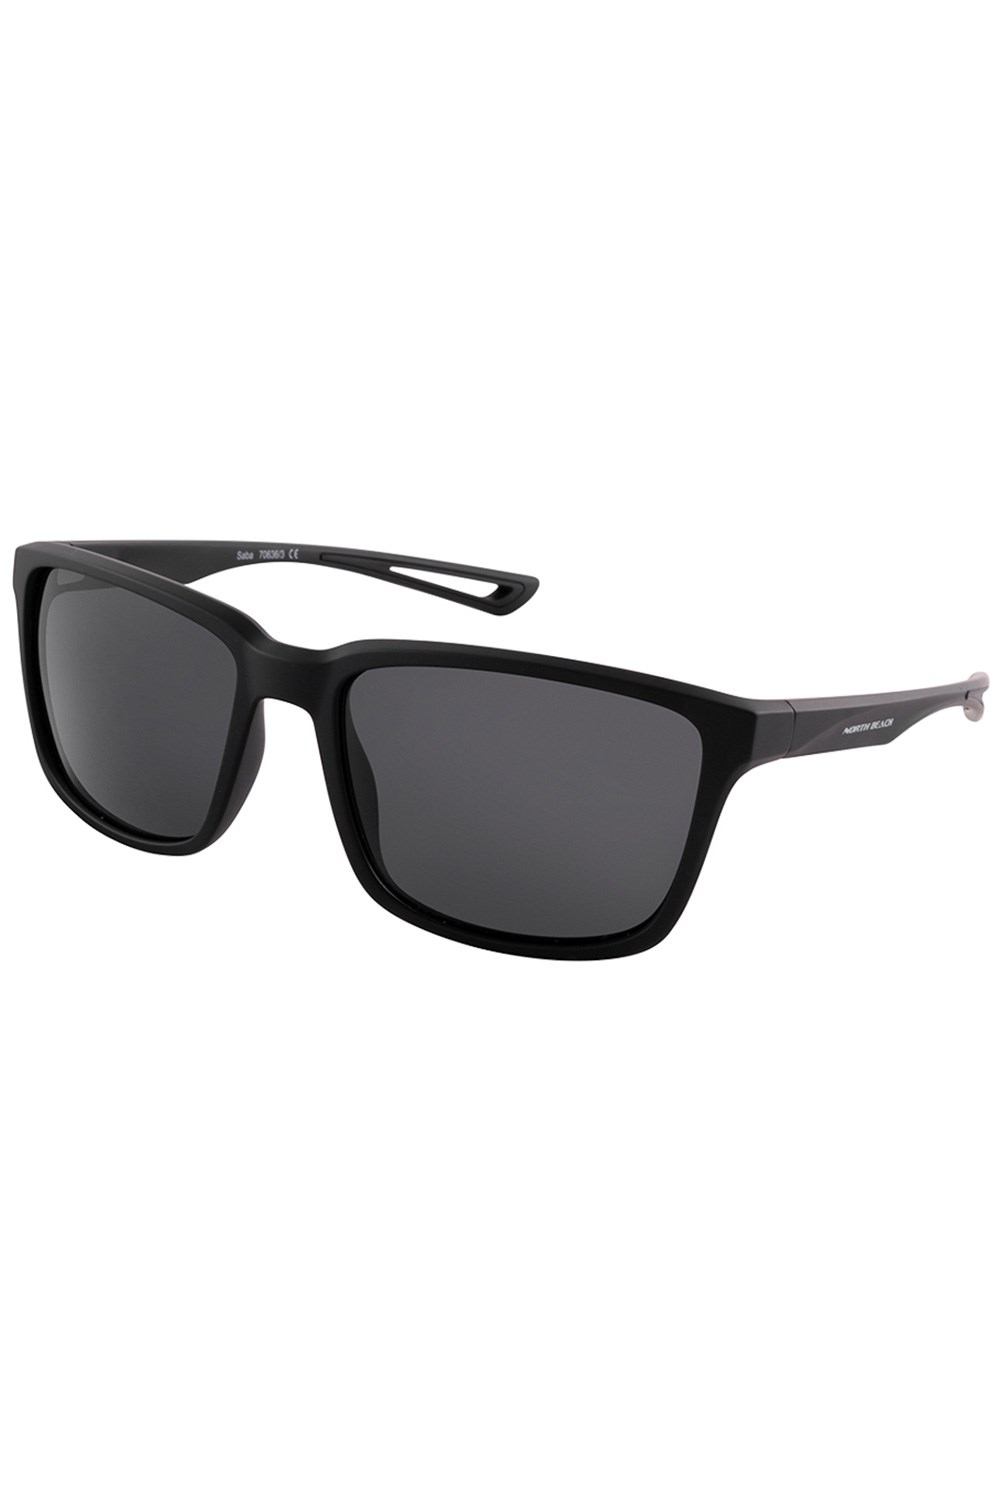 Saba Unisex Polarized Sunglasses -